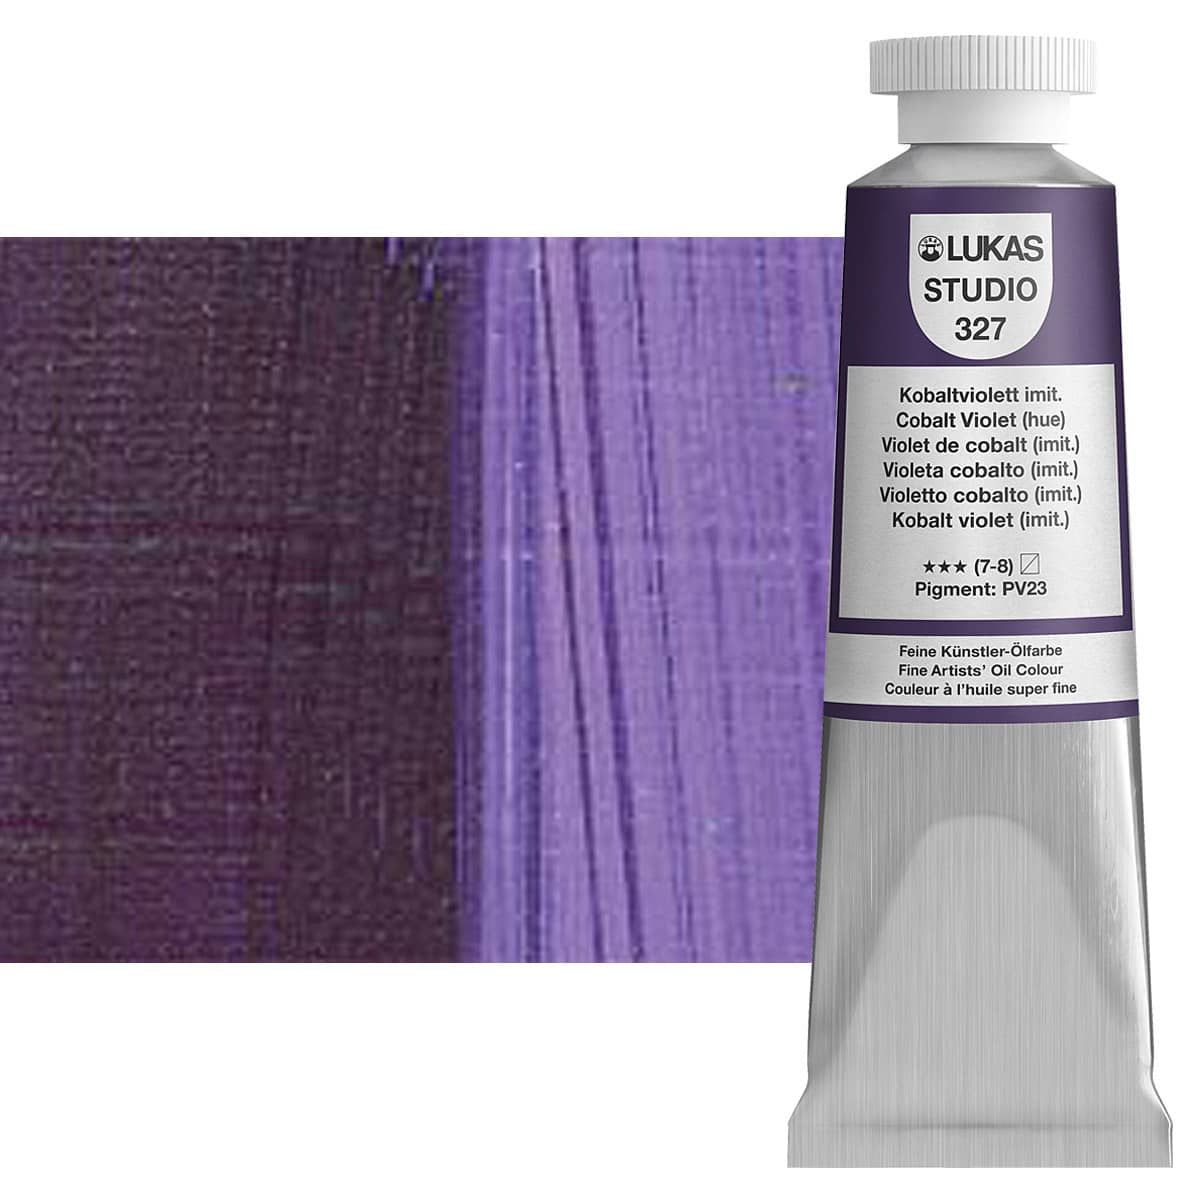 LUKAS Studio Oil Color - Cobalt Violet Hue, 37ml